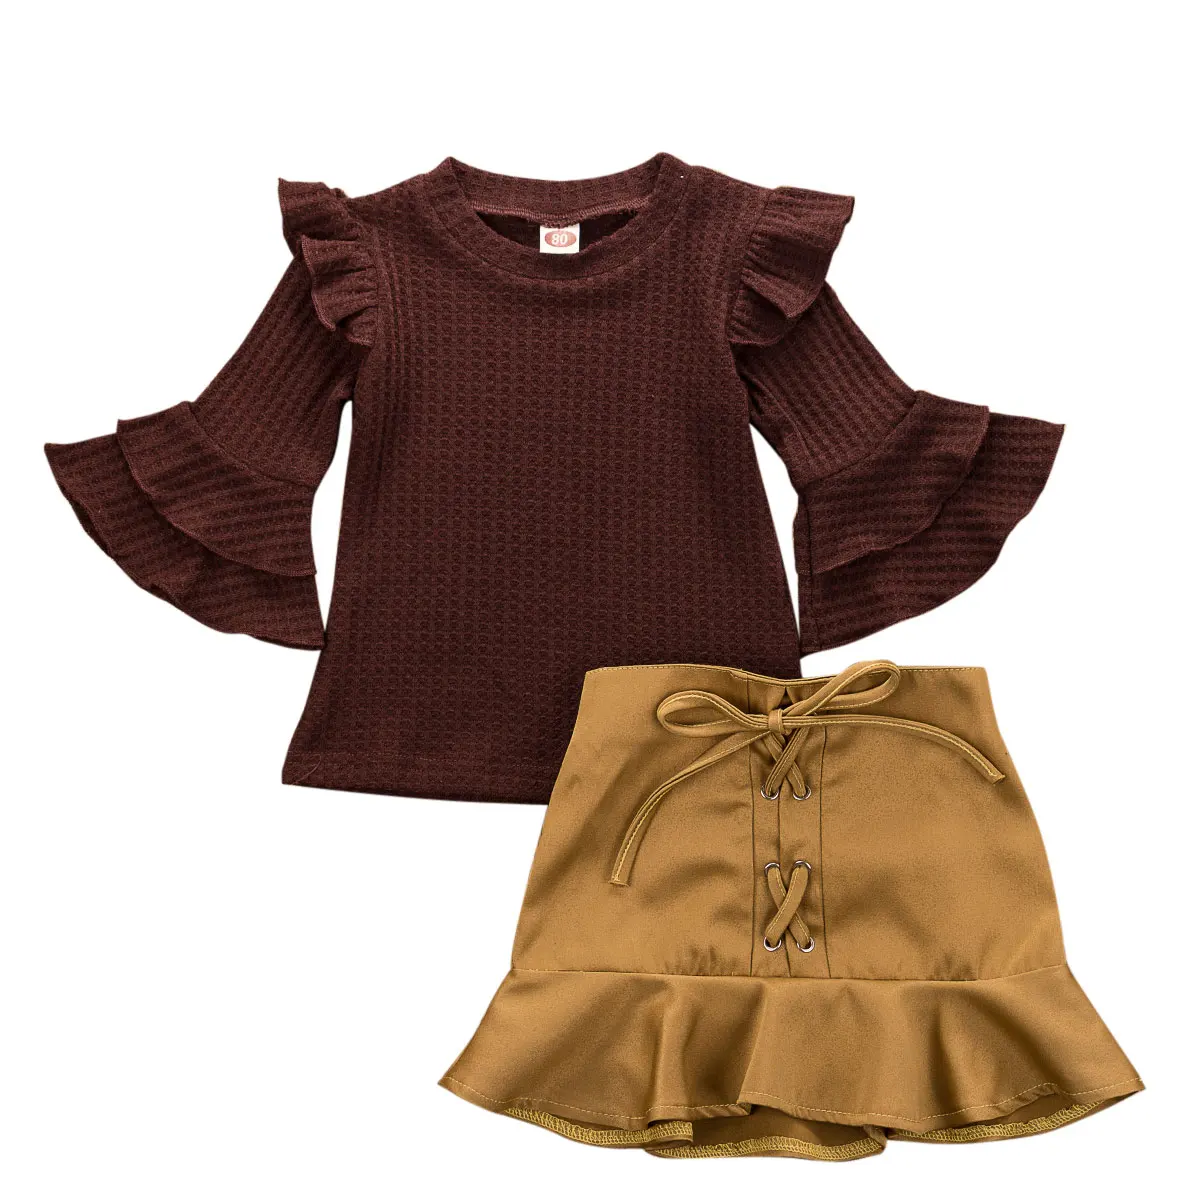 Осенняя одежда США одежда для маленьких девочек хлопковые топы, футболка+ мини-юбка платье комплект осенней одежды, От 0 до 4 лет - Цвет: Коричневый